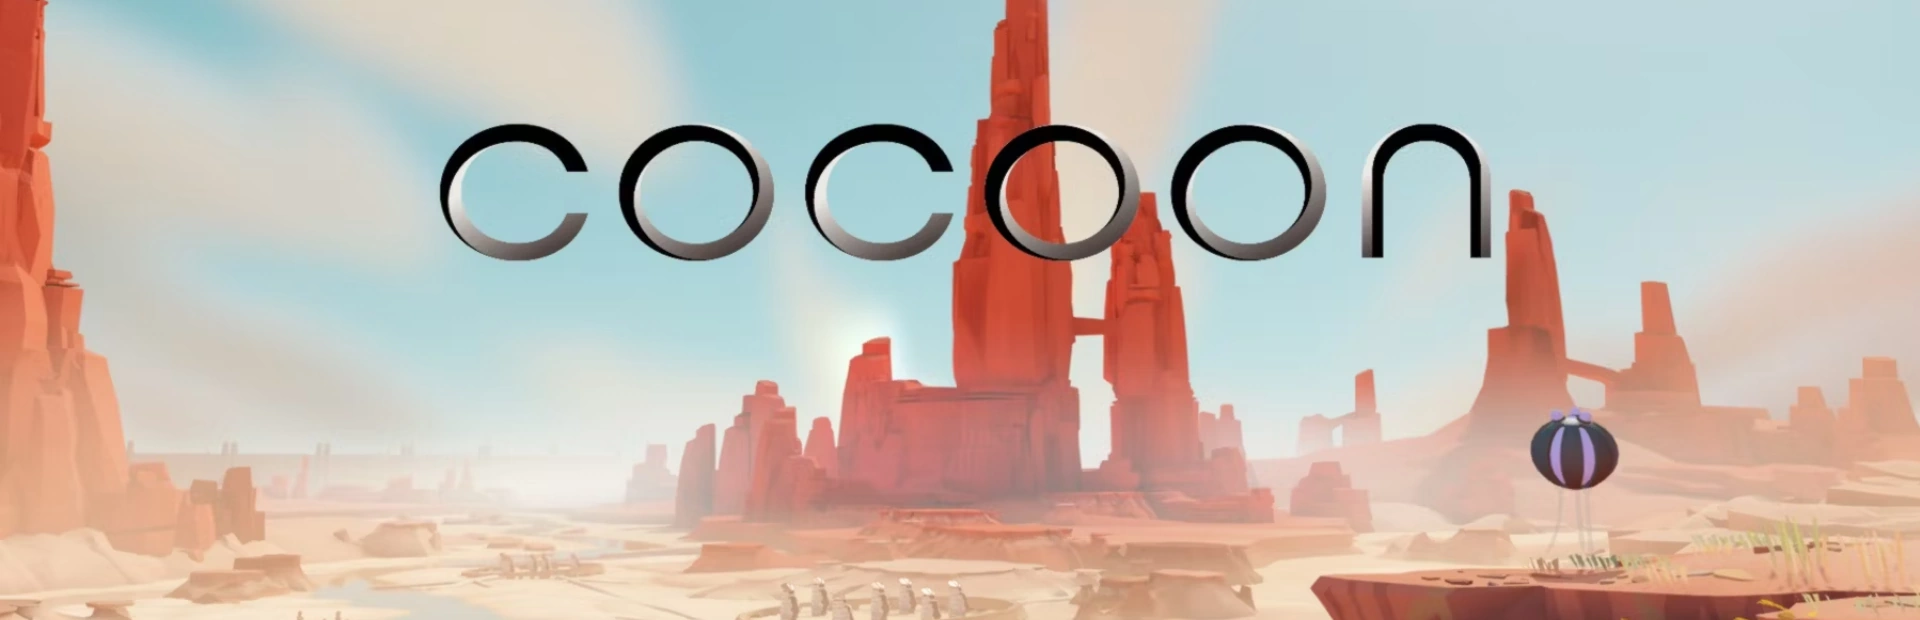 دانلود بازی COCOON برای کامپیوتر | گیمباتو